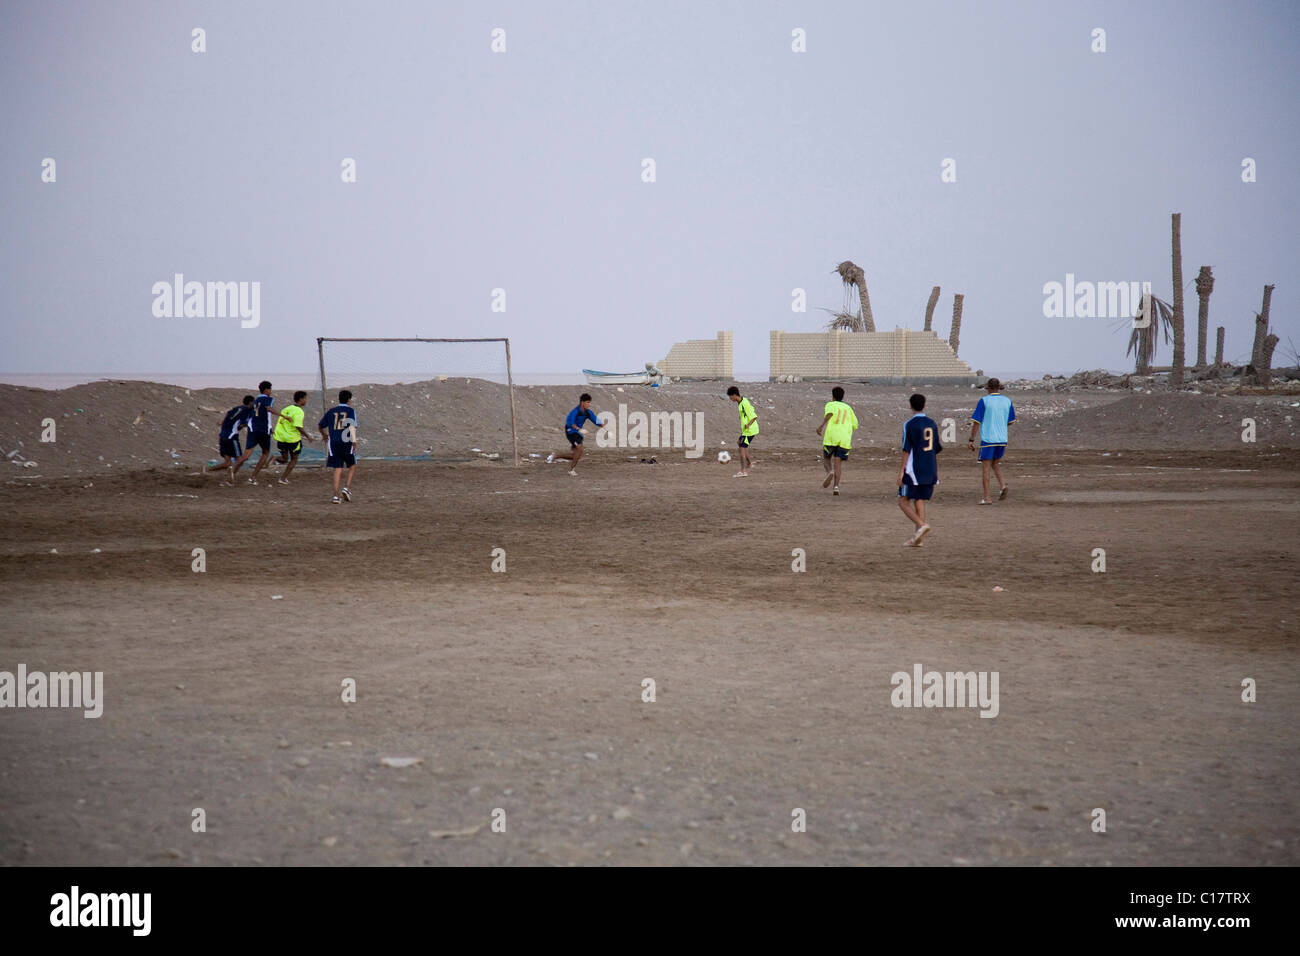 Juego de Fútbol, desierto, Omán, Oriente Próximo Foto de stock